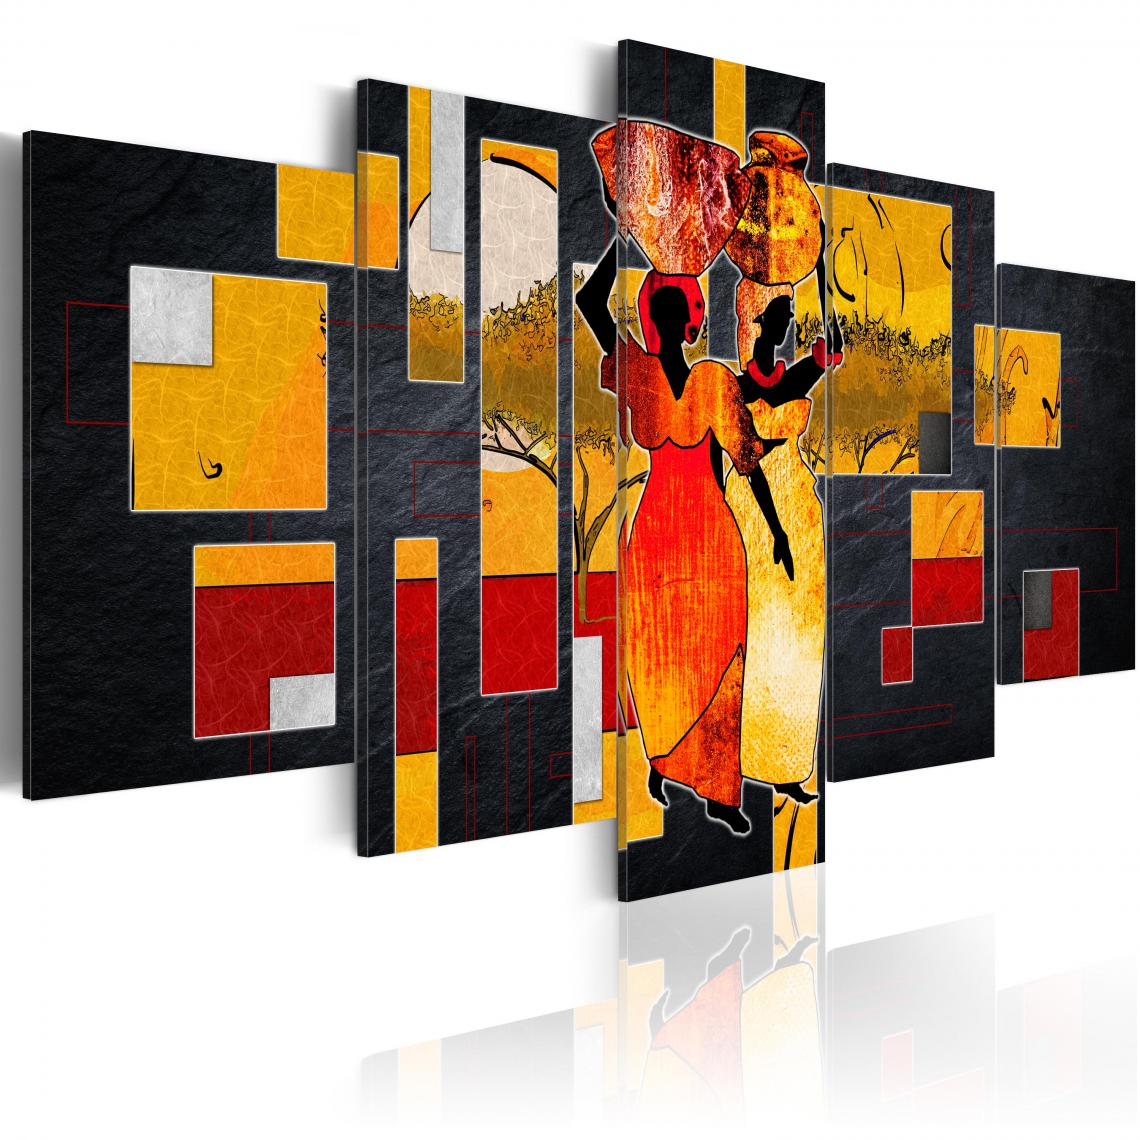 Decoshop26 - Tableau sur toile en 5 panneaux décoration murale image imprimée cadre en bois à suspendre Promenade dans le désert 100x50 cm 11_0007719 - Tableaux, peintures